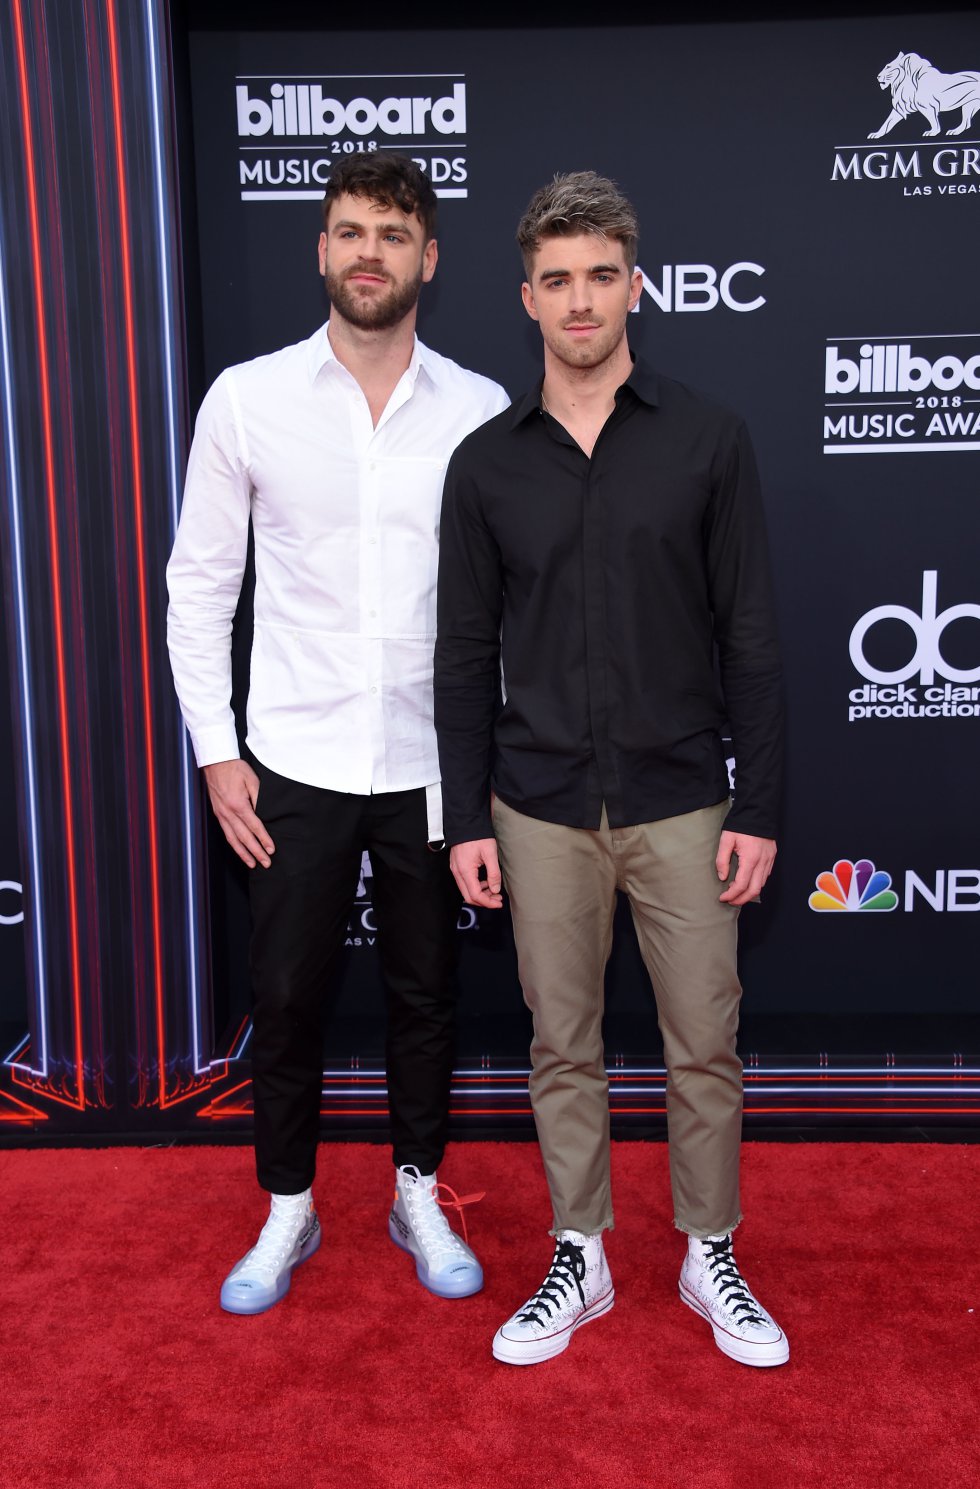 Las cantantes abren el abanico de firmas en la 'red carpet' de los Billboard Music Awards 2018